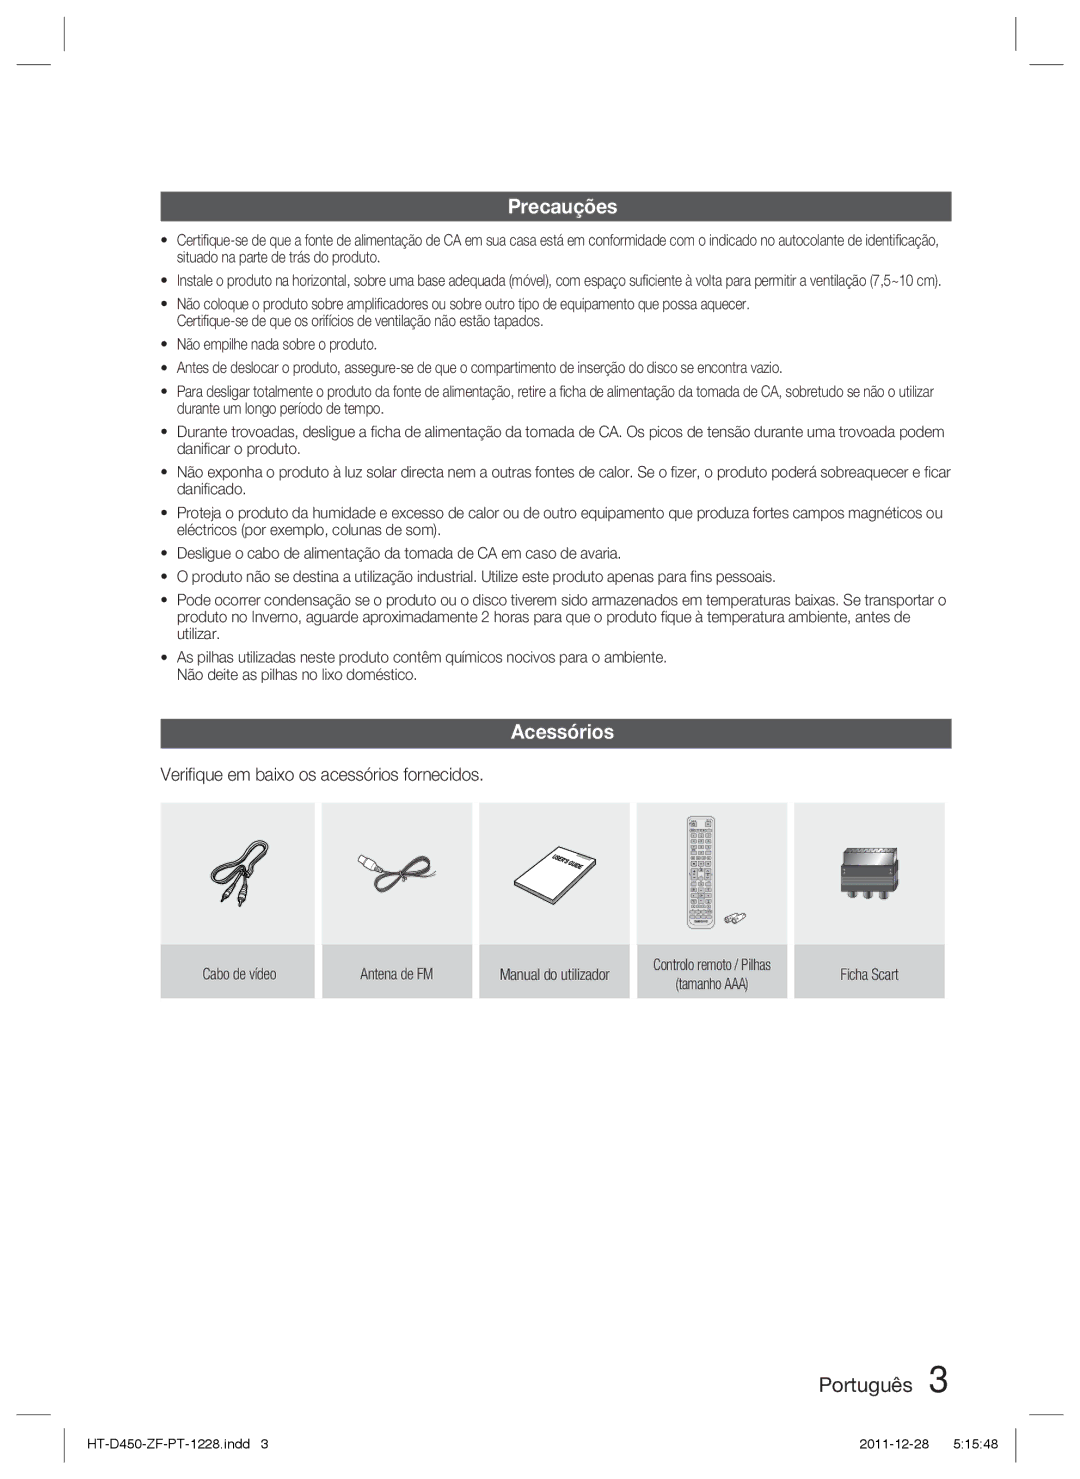 Samsung HT-D455/ZF manual Precauções, Acessórios, Veriﬁque em baixo os acessórios fornecidos 